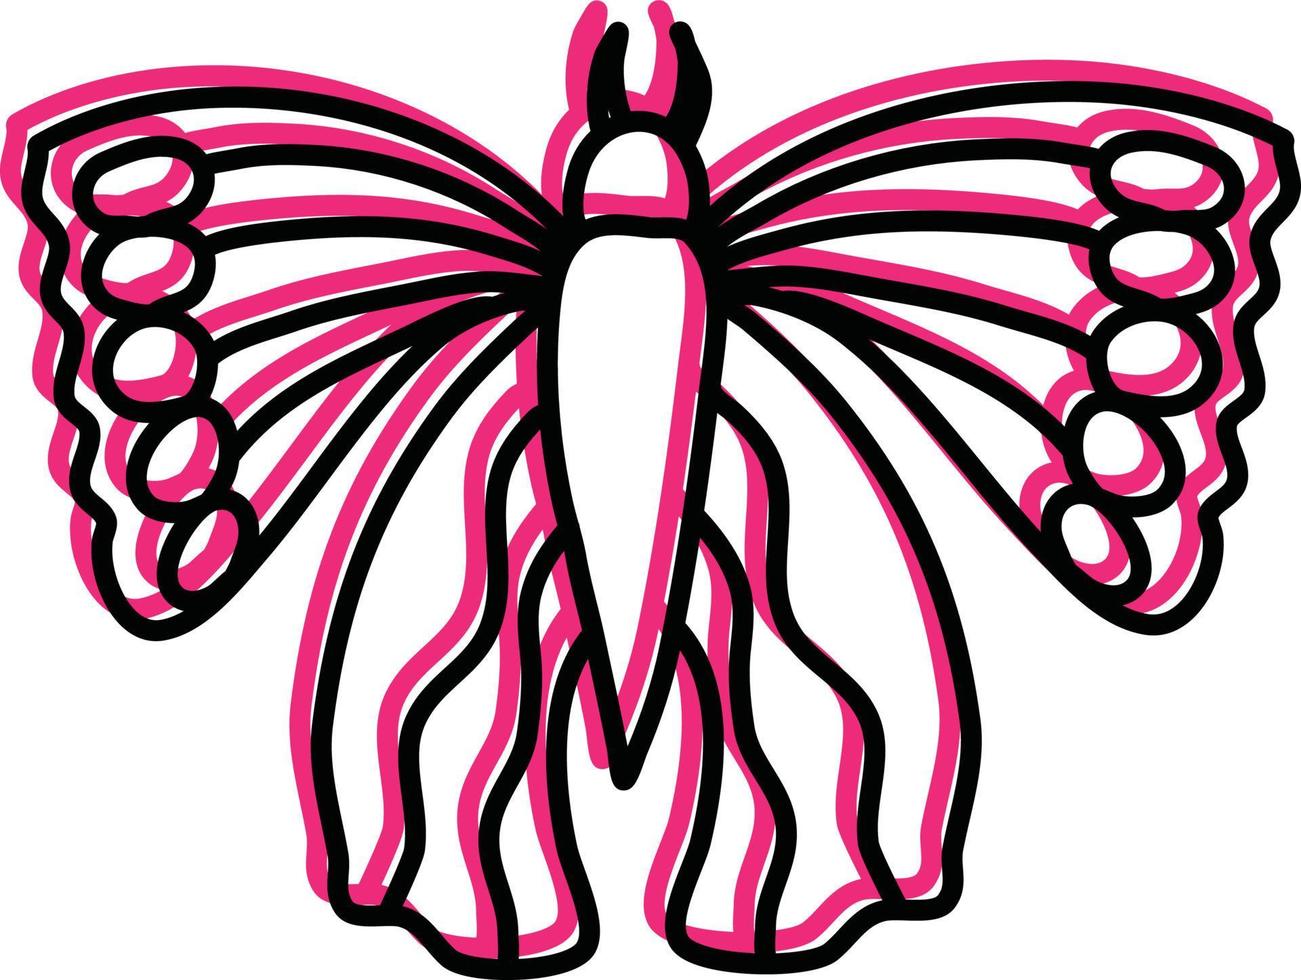 Rosa Schmetterling mit ungewöhnlichen Flügeln, Illustration, Vektor auf weißem Hintergrund